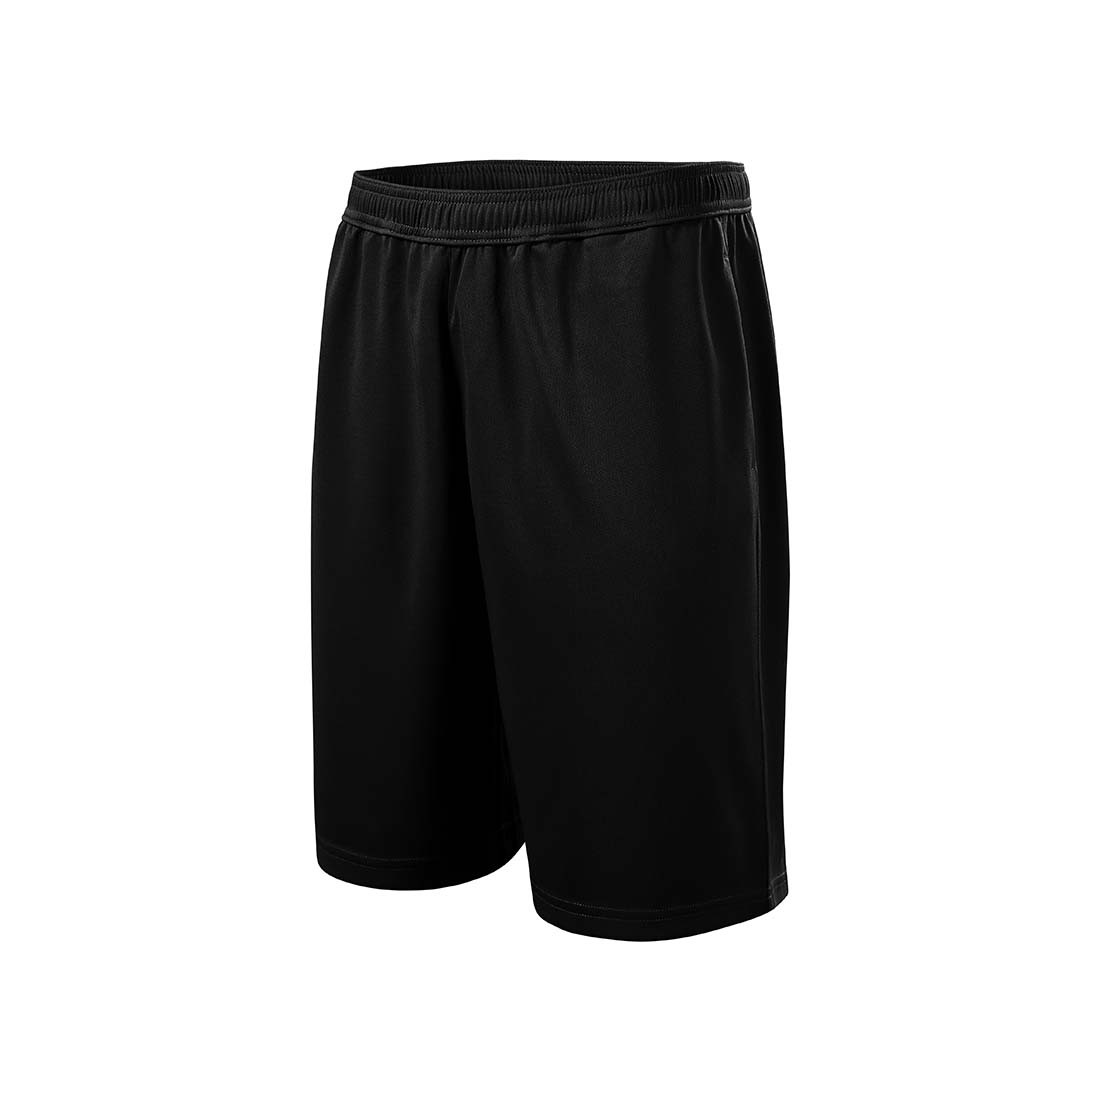 Shorts pour hommes - Les vêtements de protection